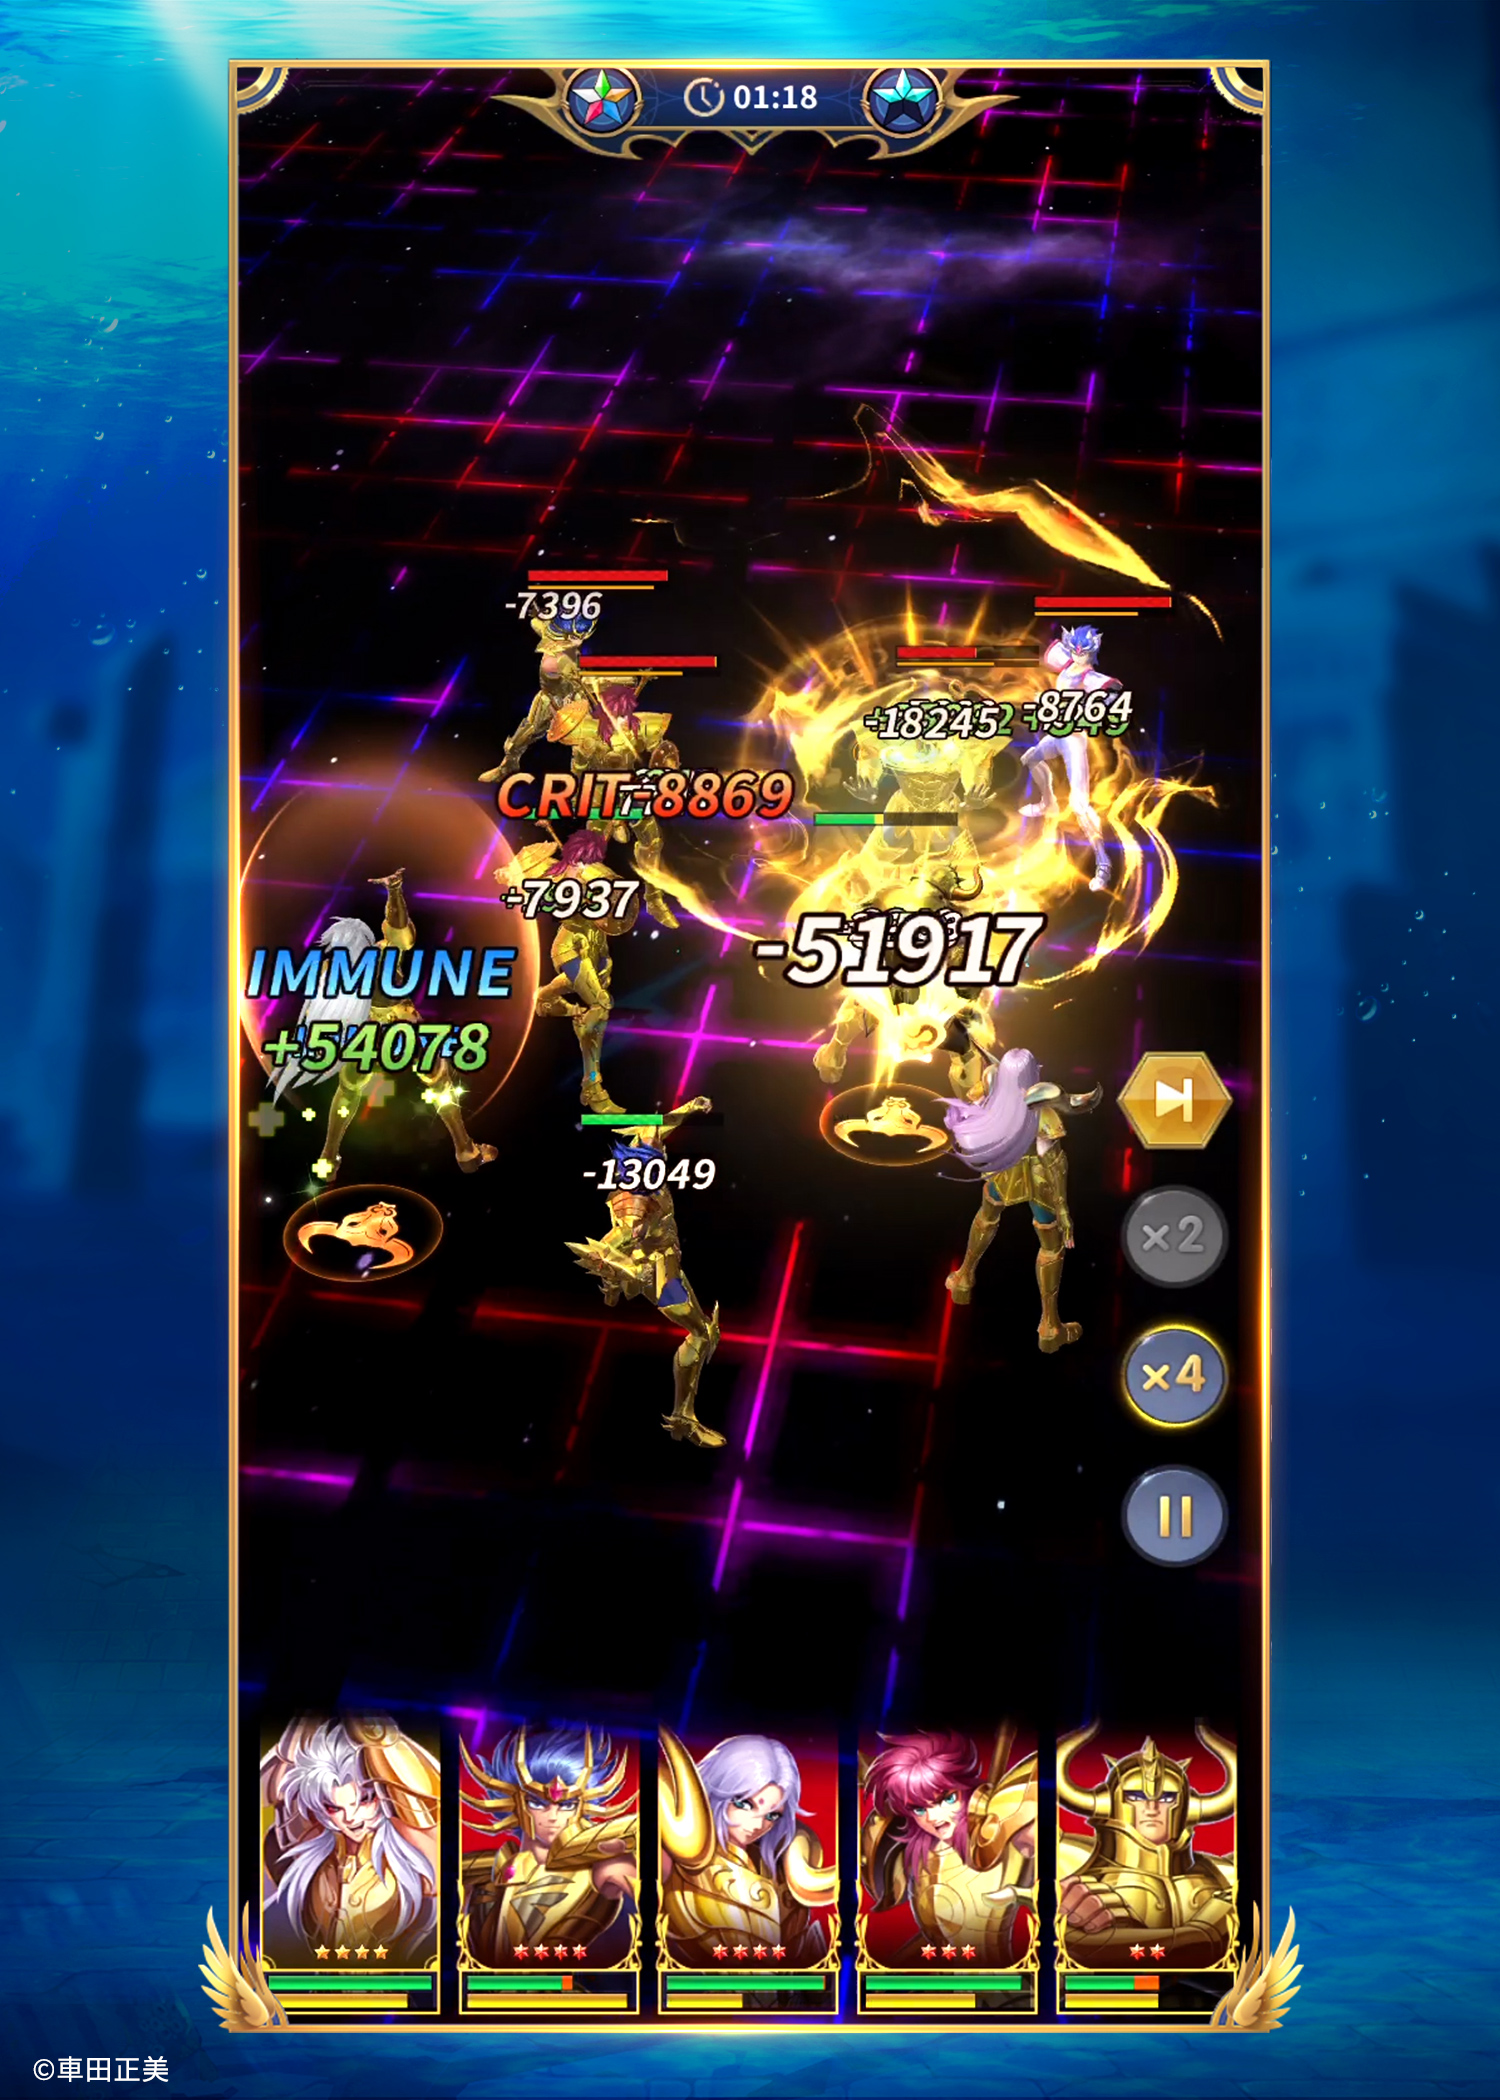 Hint Saint Seiya Omega Games APK (Android Game) - Baixar Grátis